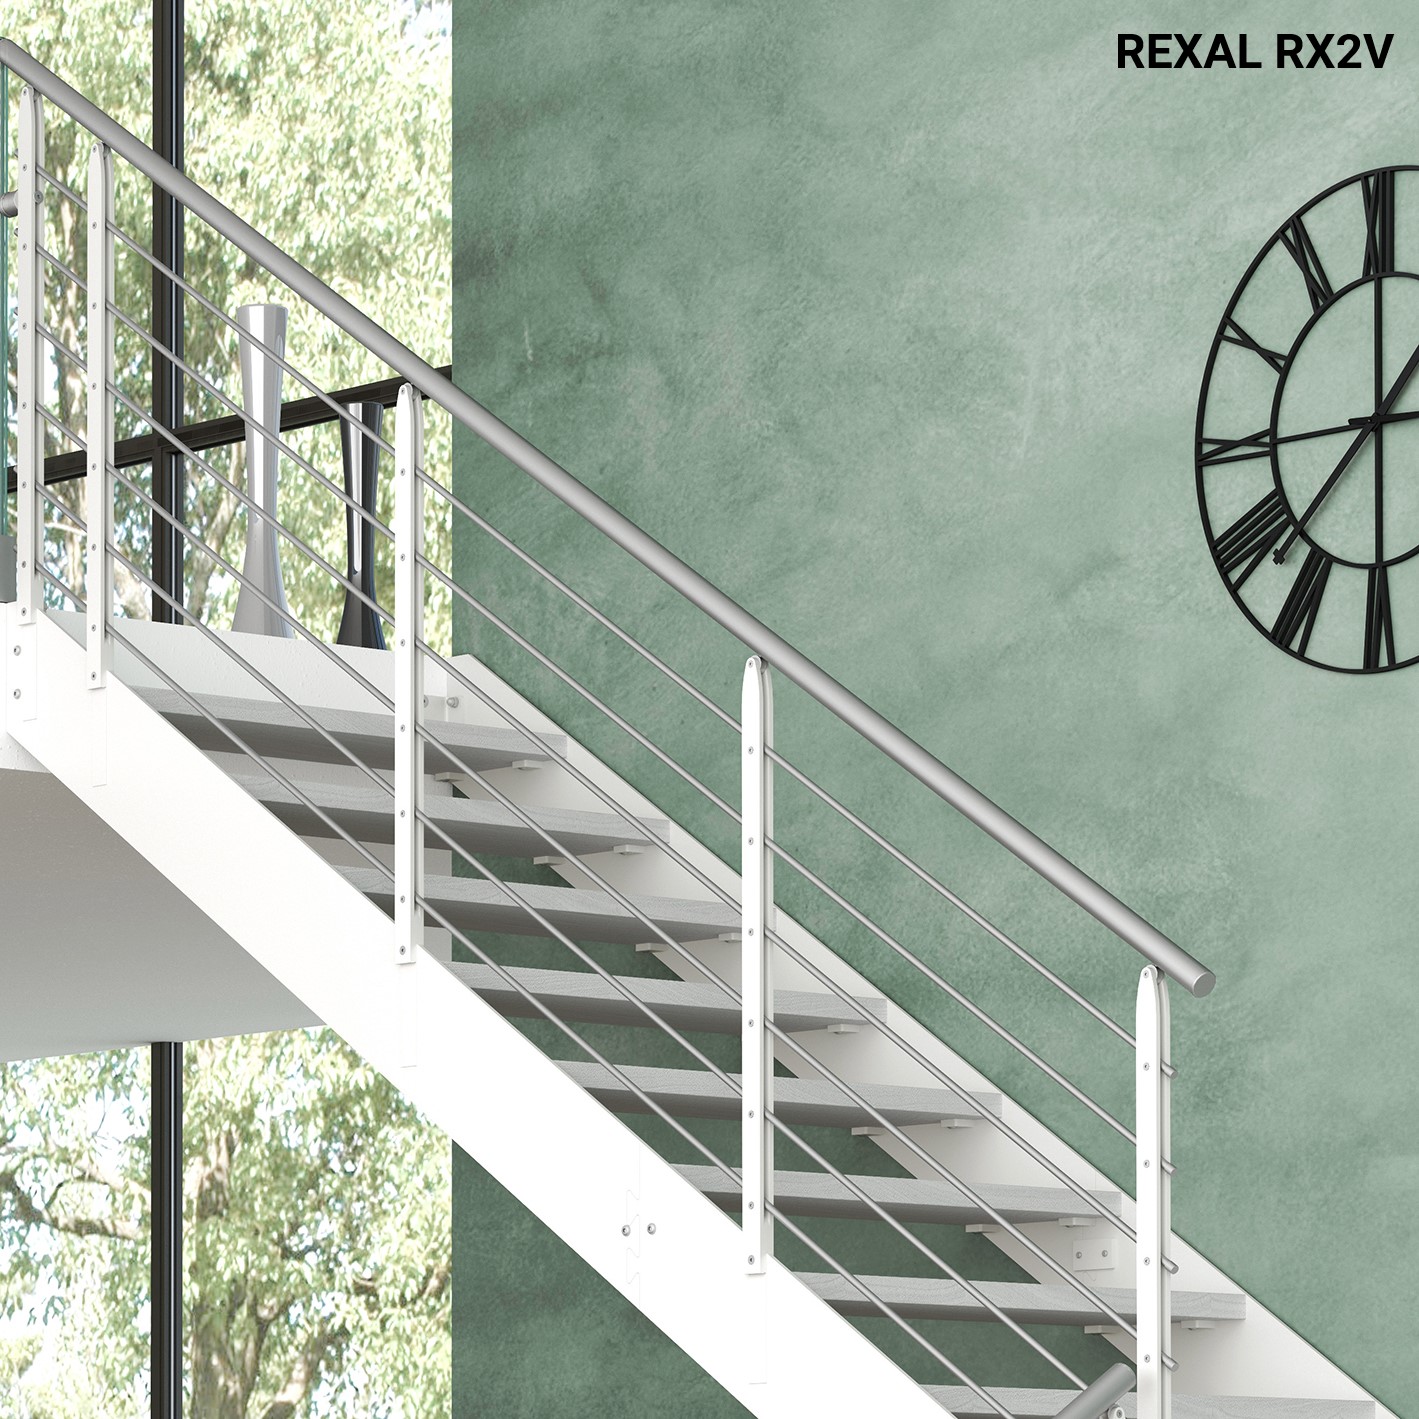 Rexal RX2, Escaleras voladas